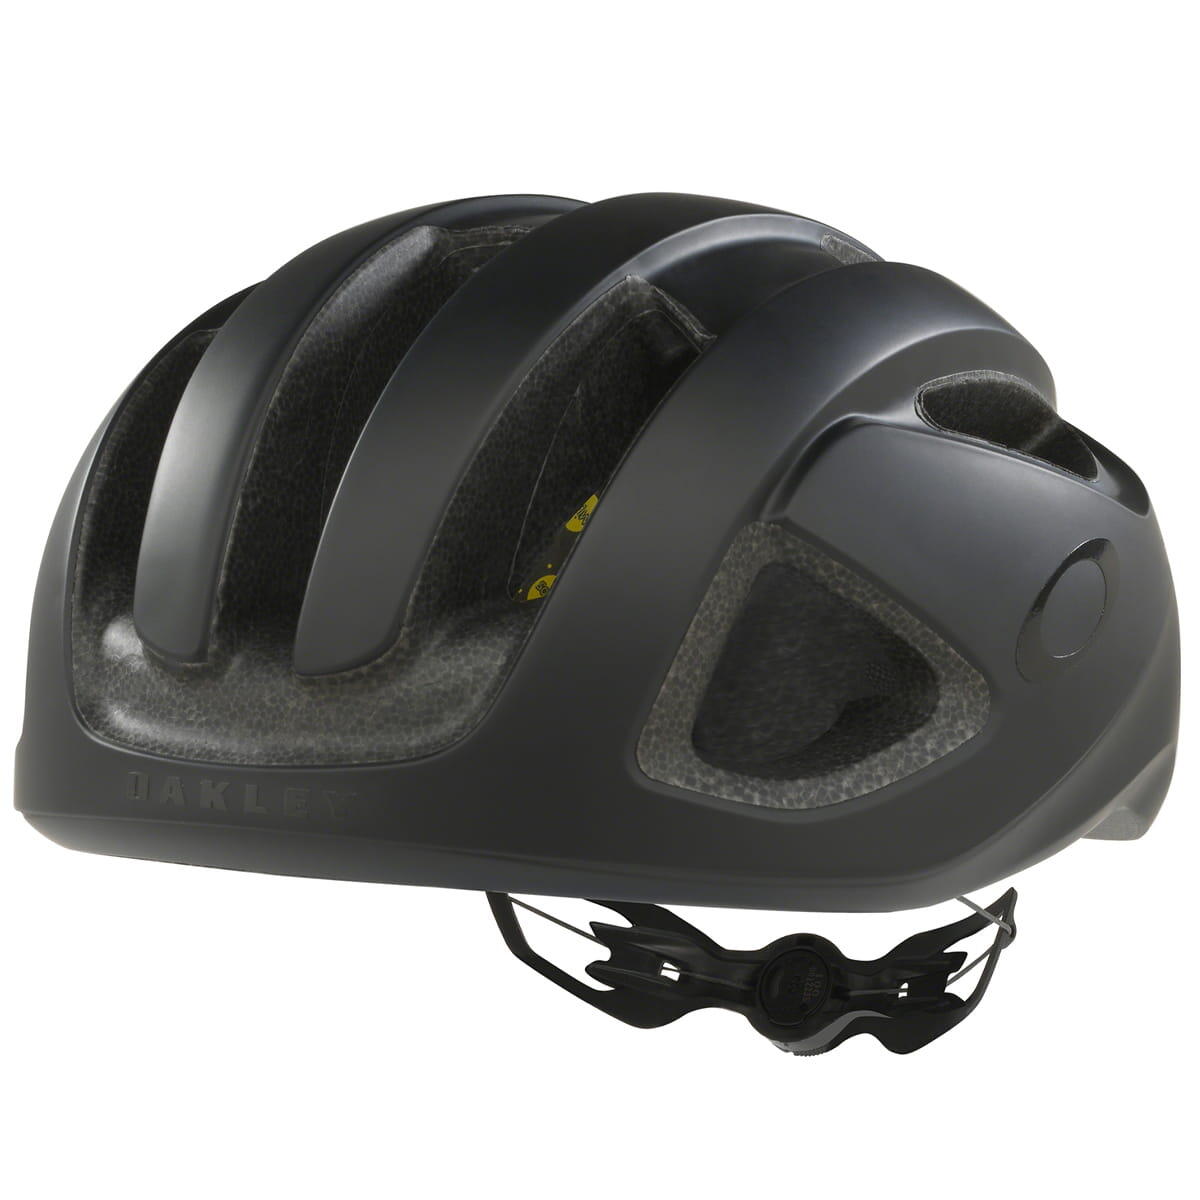 OAKLEY Aro3 Unisex Cycling Helmet - Blackout